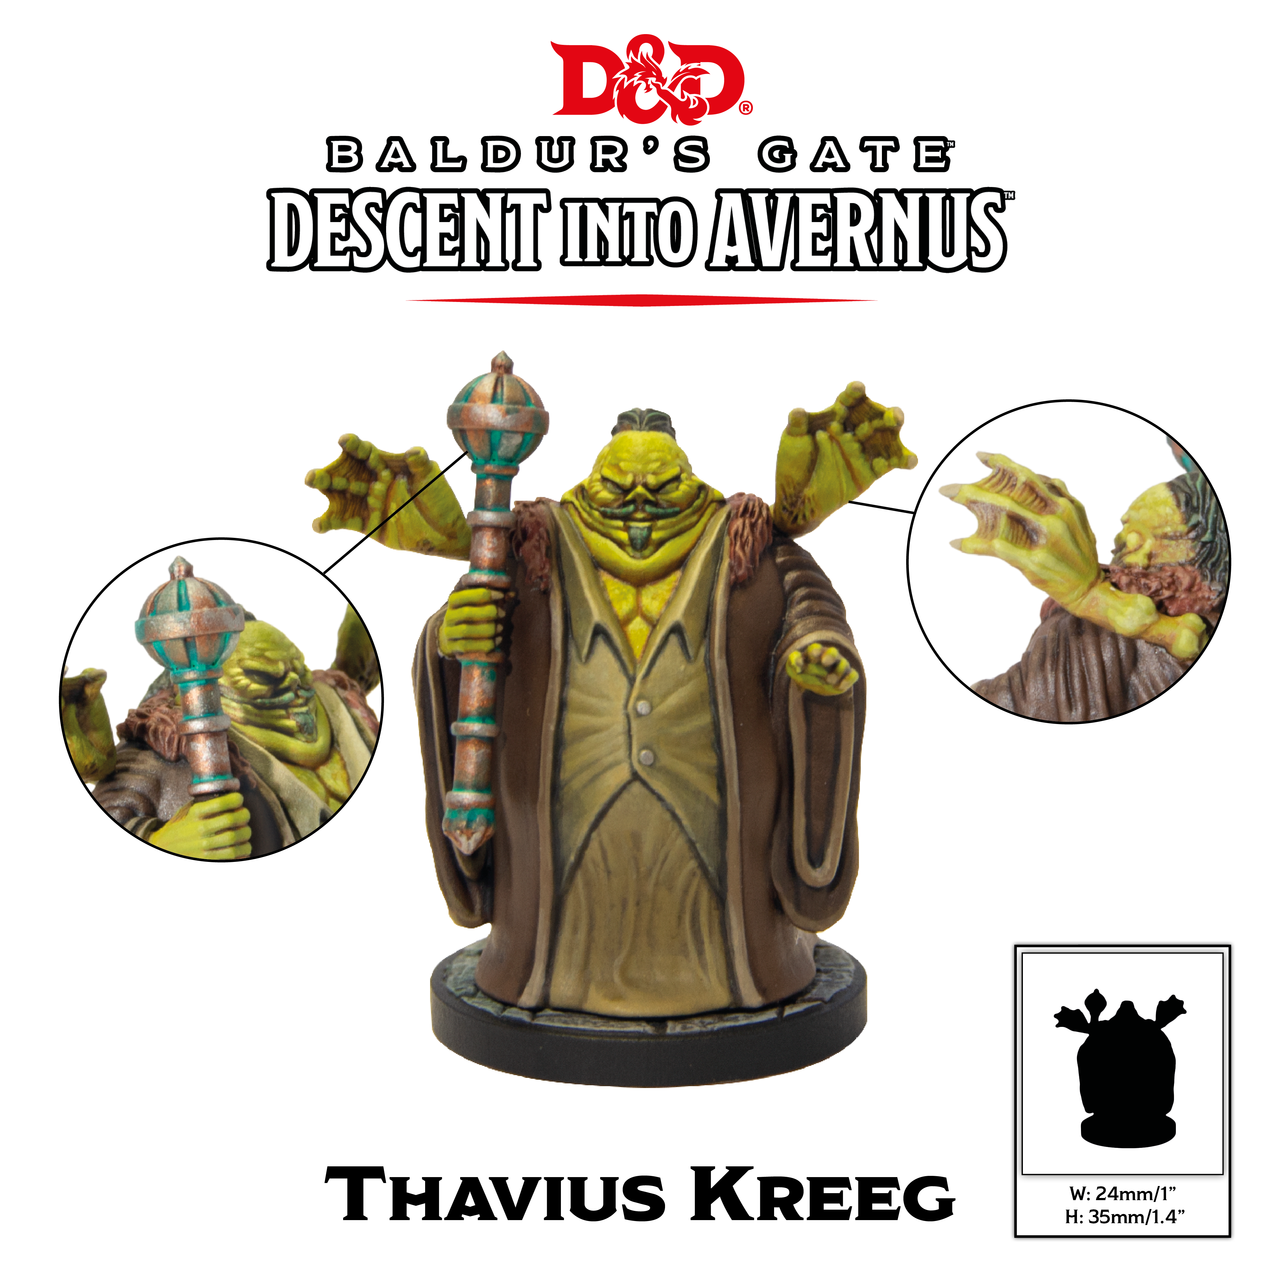 Baldur's Gate Descent into Avernus Thavius Kreeg | Boutique FDB